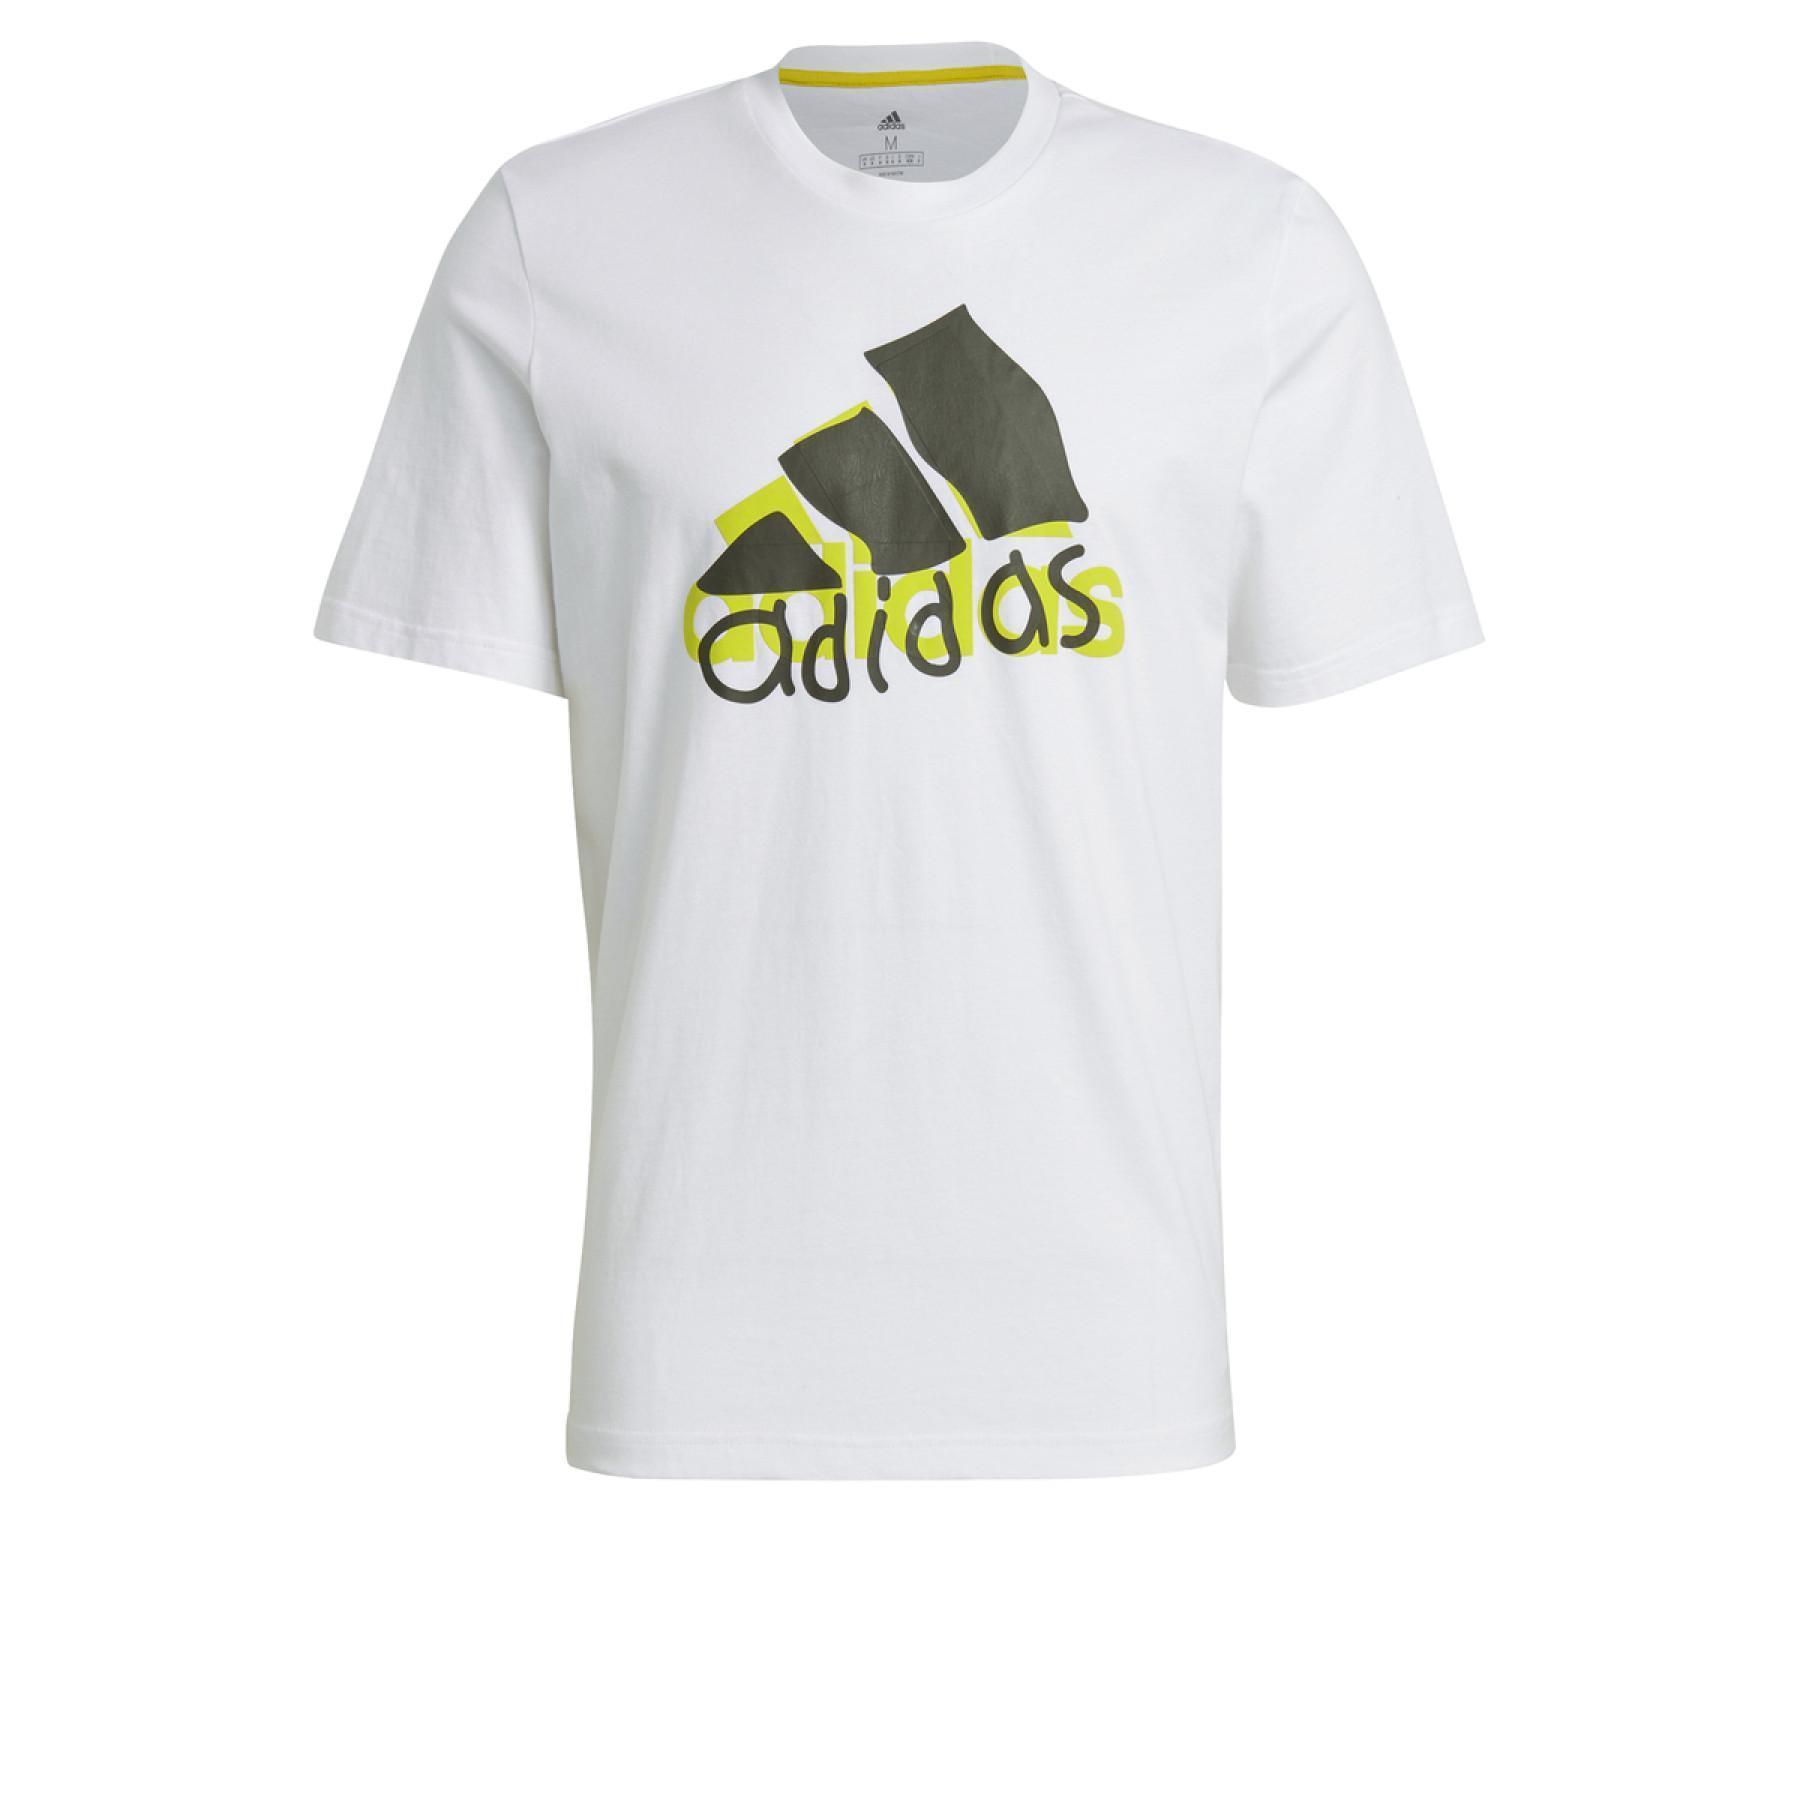 Camiseta adidas Athletics Graphic